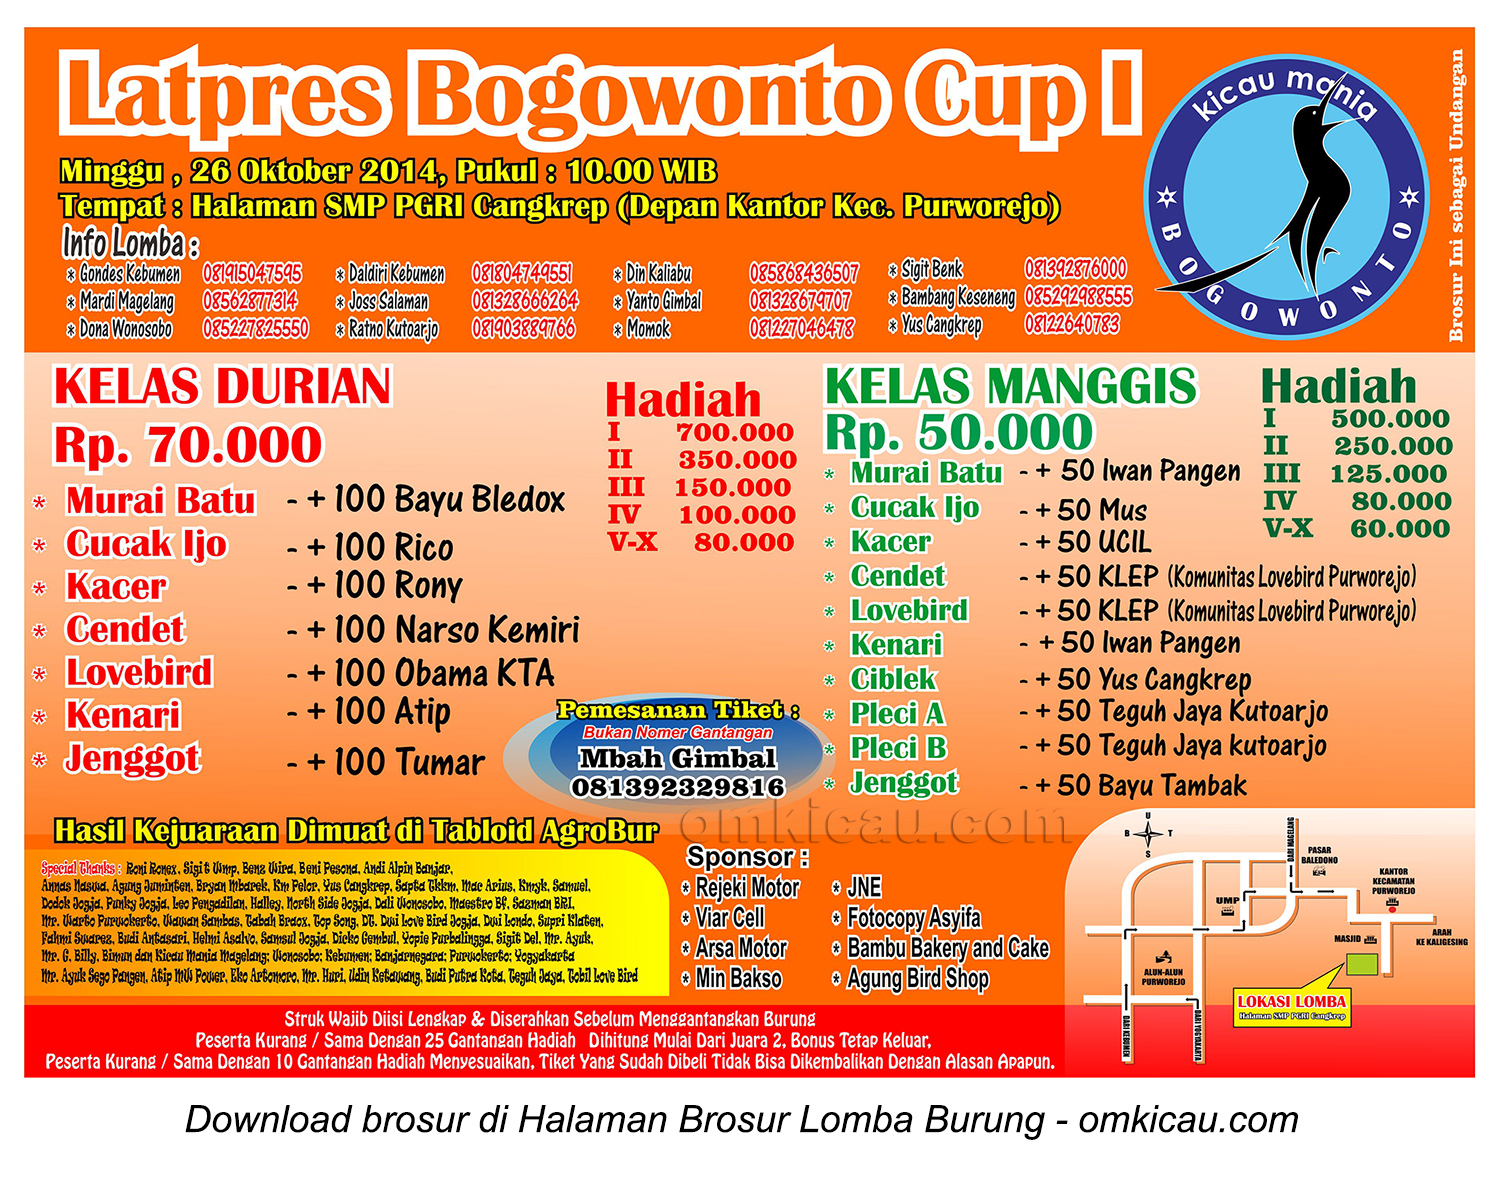 Brosur Latpres Bogowonto Cup I, Purworejo, 26 Oktober 2014